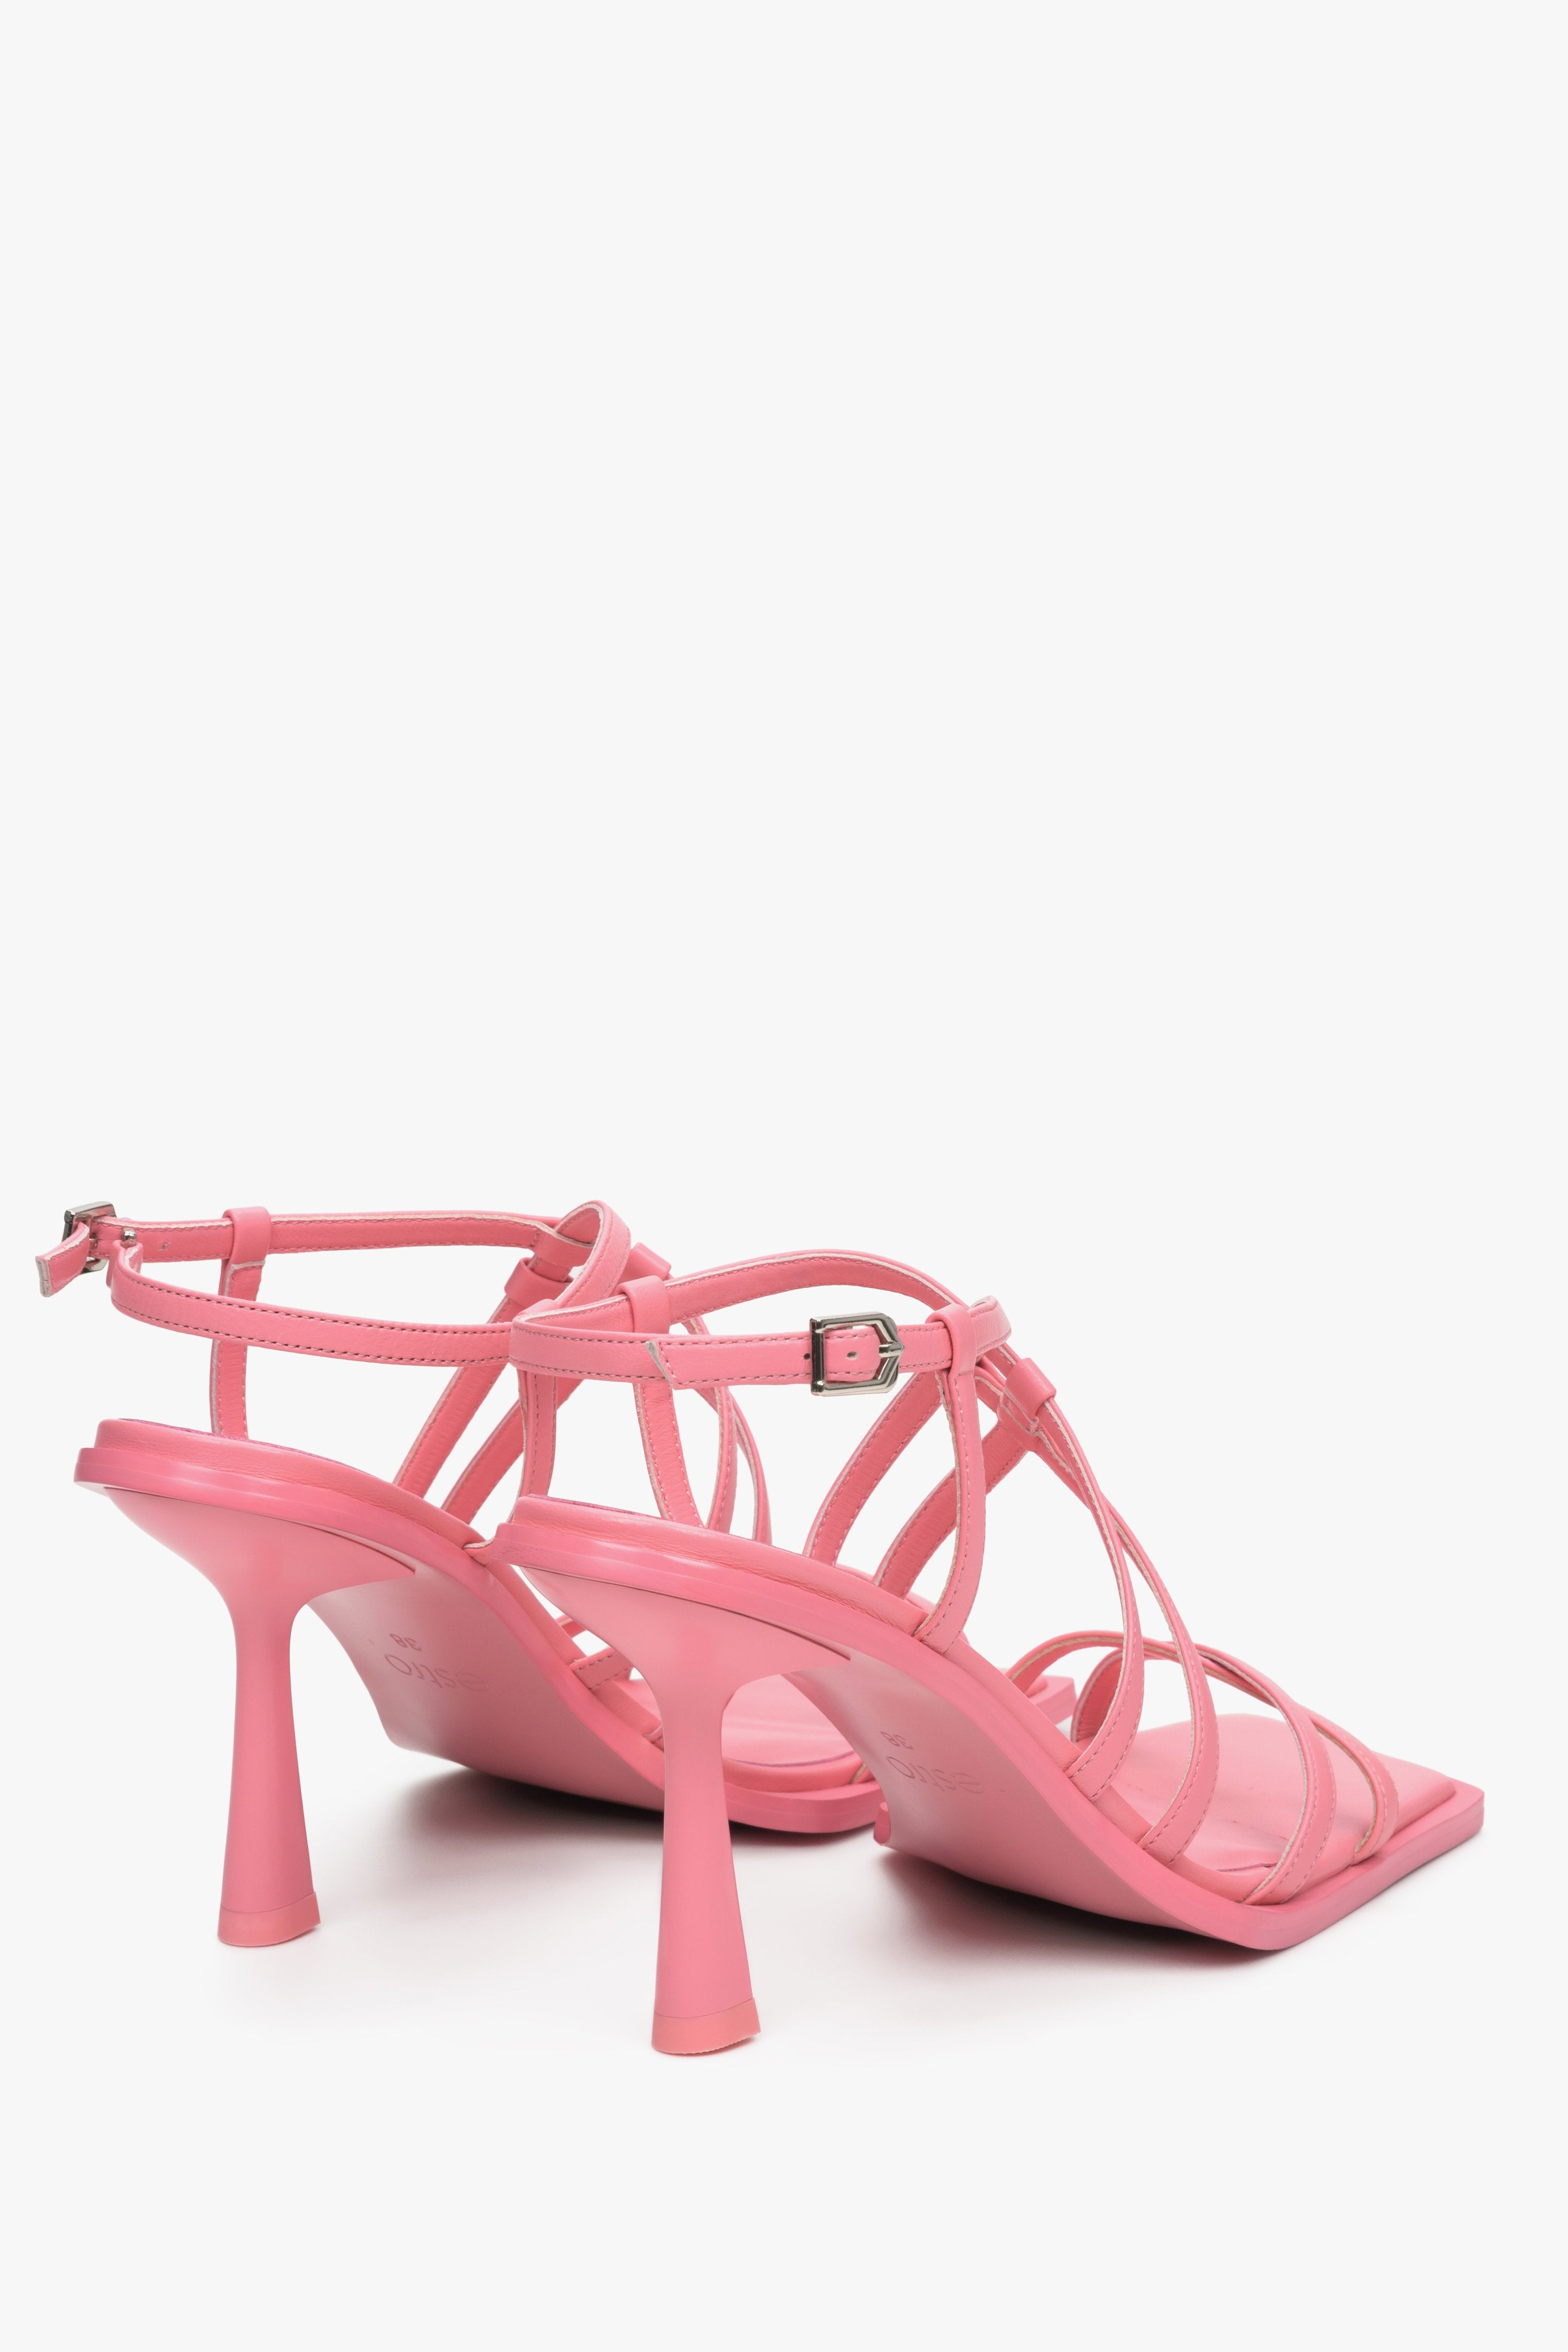 Damskie, skórzane sandały w kolorze różowym Estro - prezentacja modelu z góry.